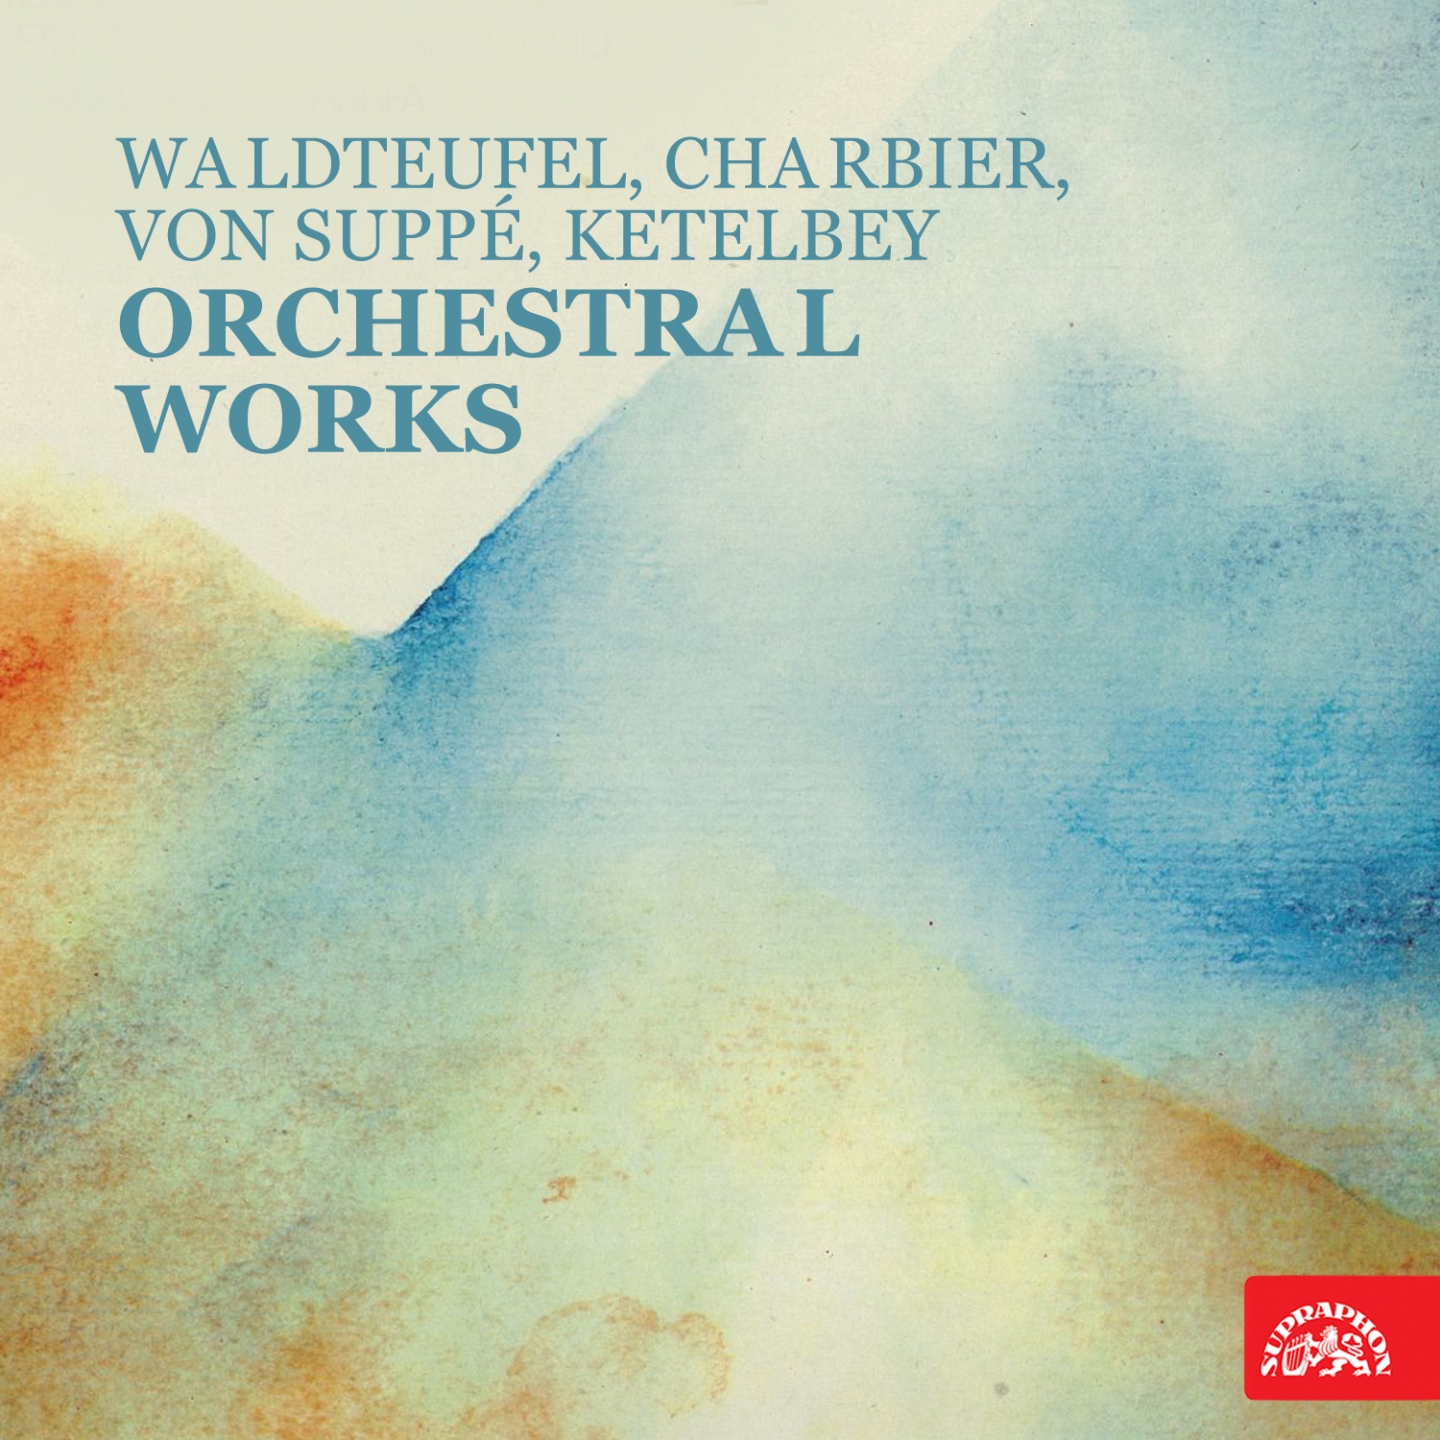 Waldteufel, Charbier, von Suppe, Ketelbey: Orchestral Works